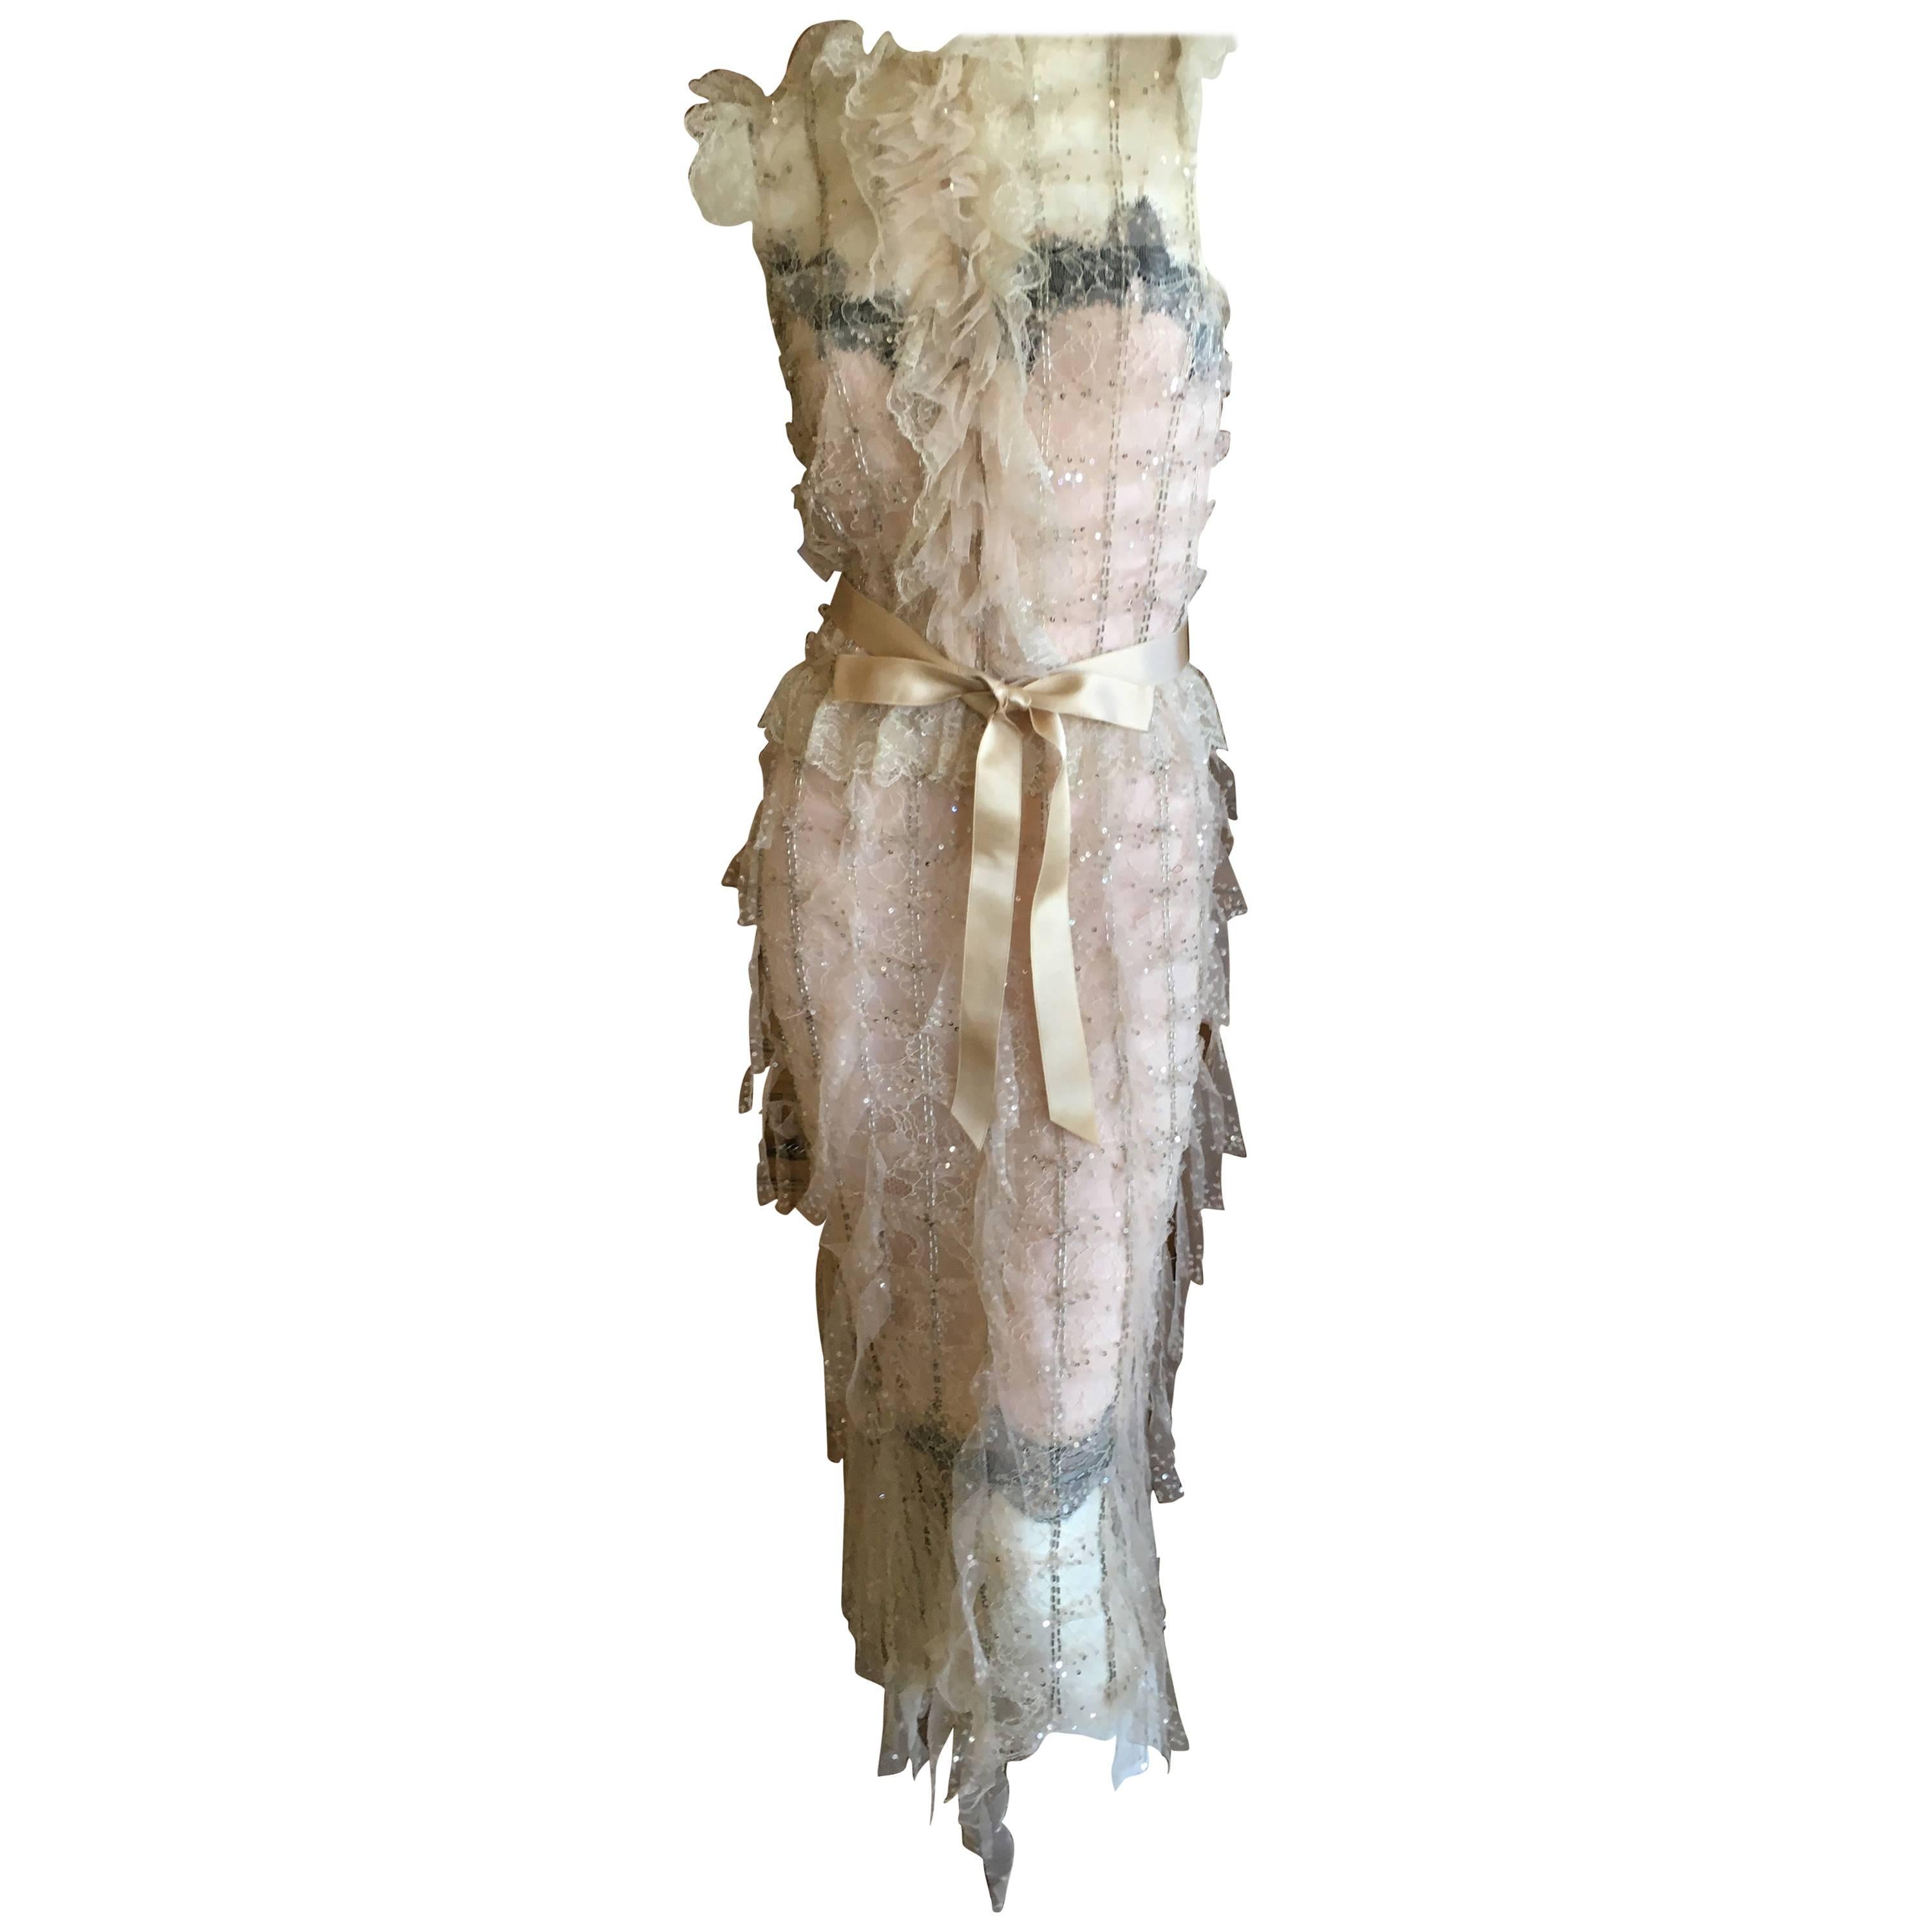  Oscar de la Renta Sheer Embellished Vintage Tiered Ruffle Trim Evening Dress  For Sale